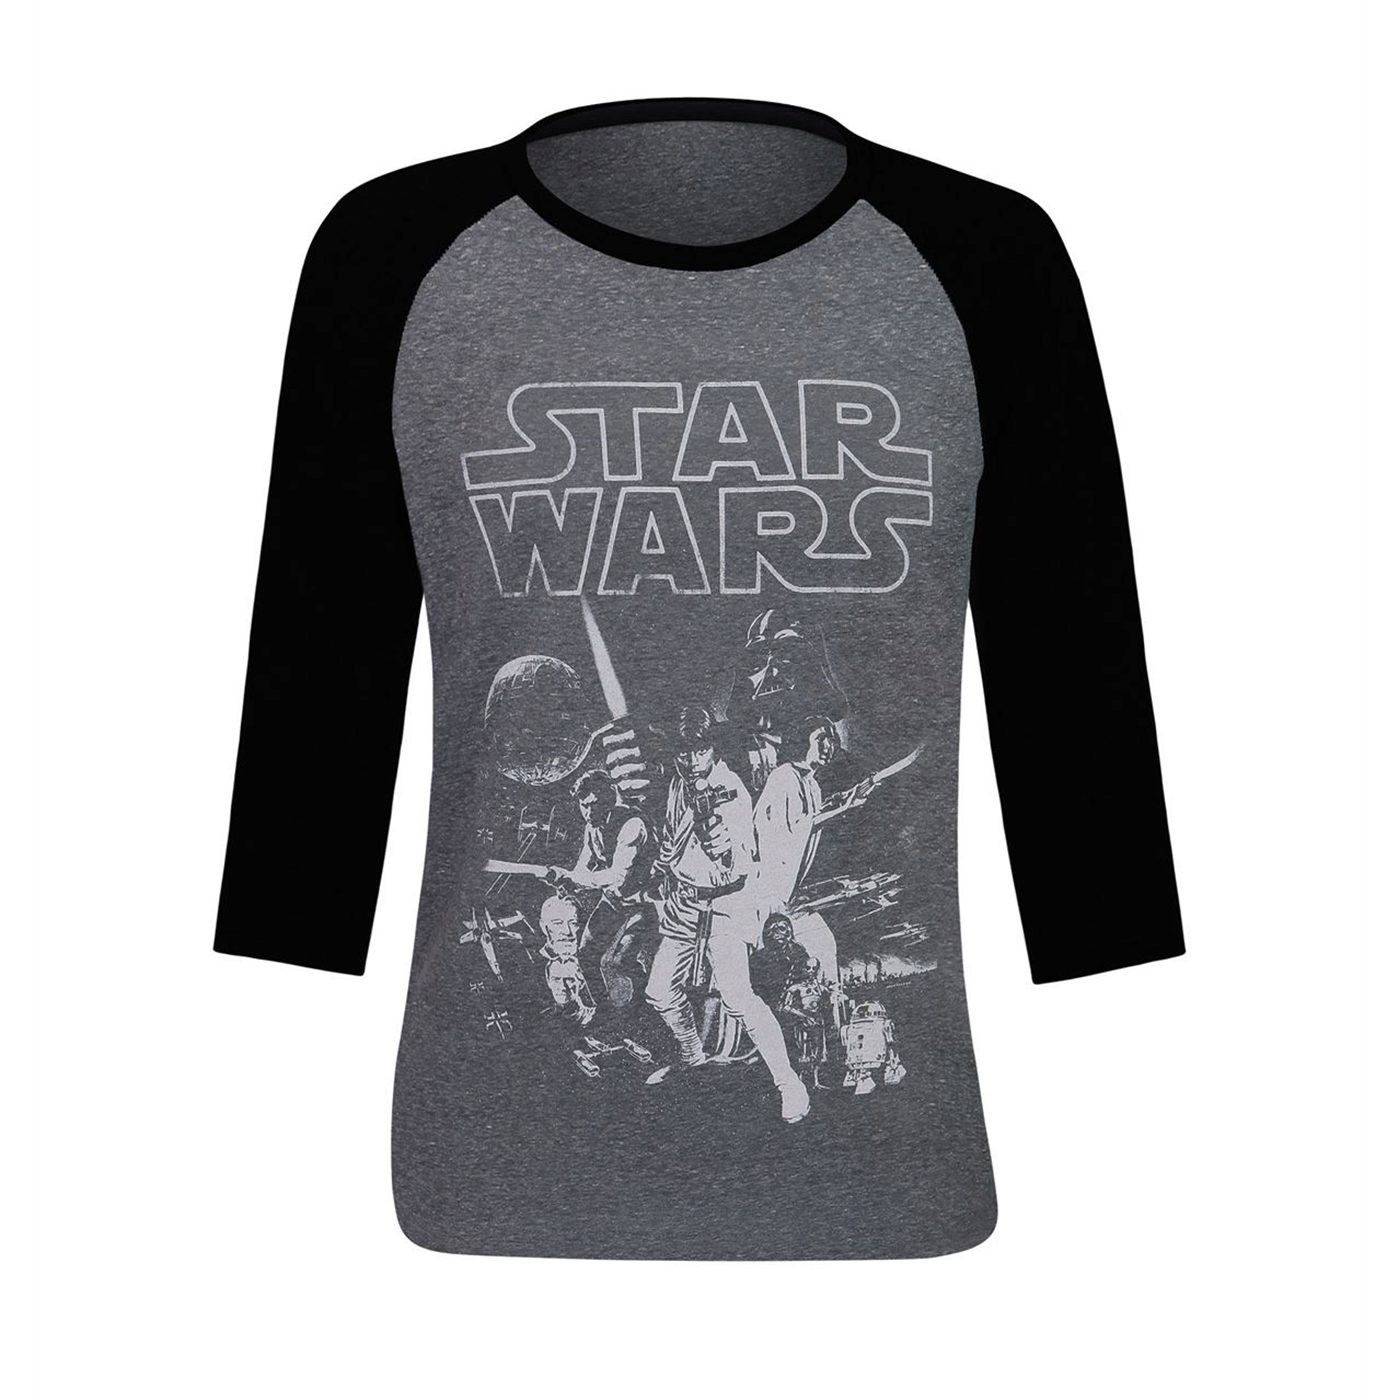 Star Wars New Hope Poster Men's Baseball T-Shirt